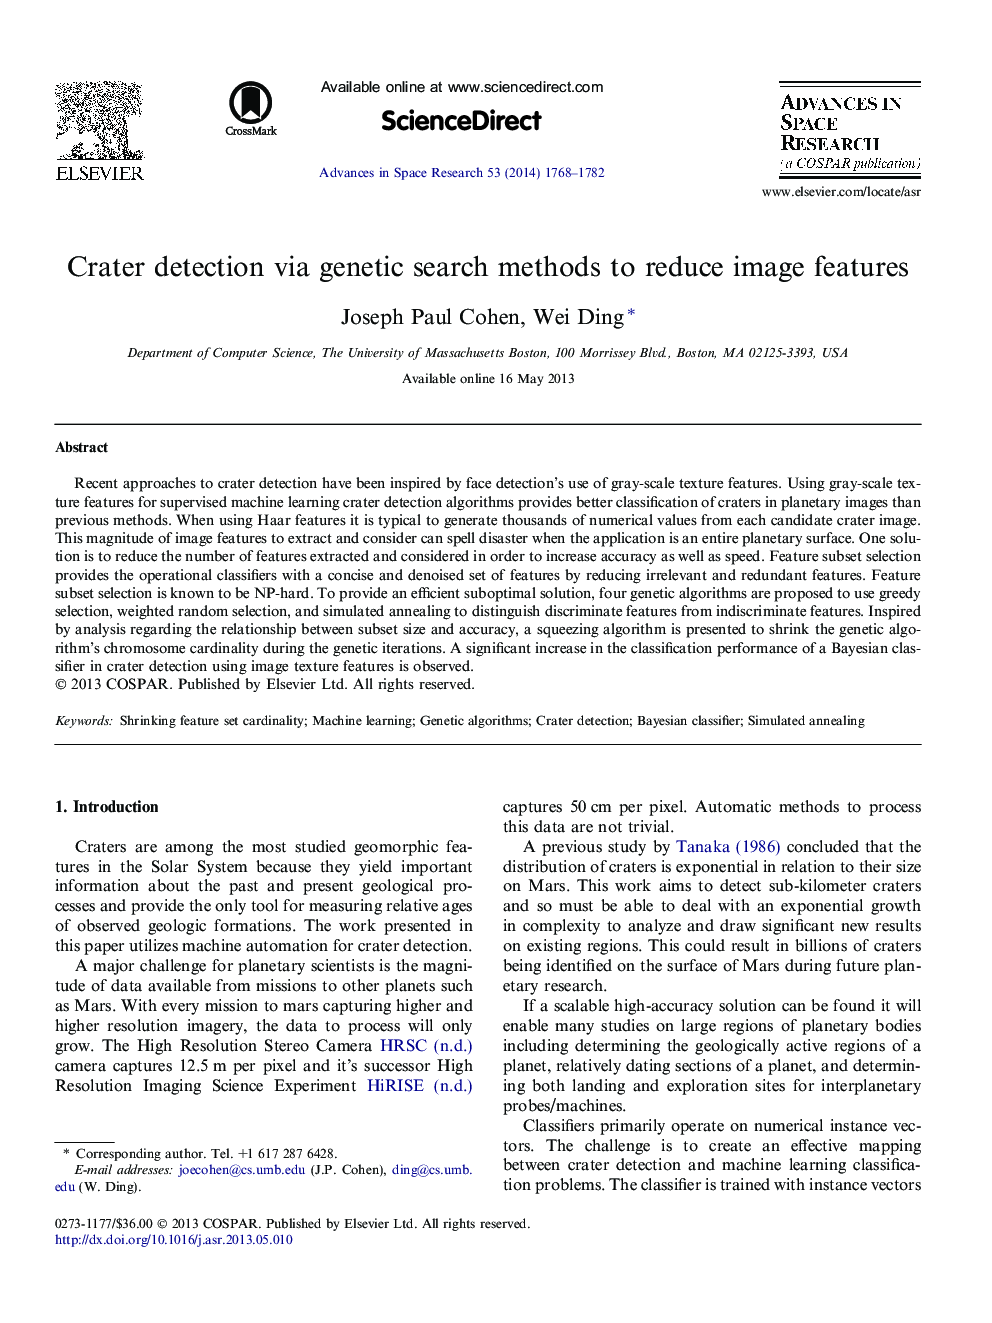 تشخیص چرخه از طریق روش جستجوی ژنتیکی برای کاهش ویژگی های تصویر 